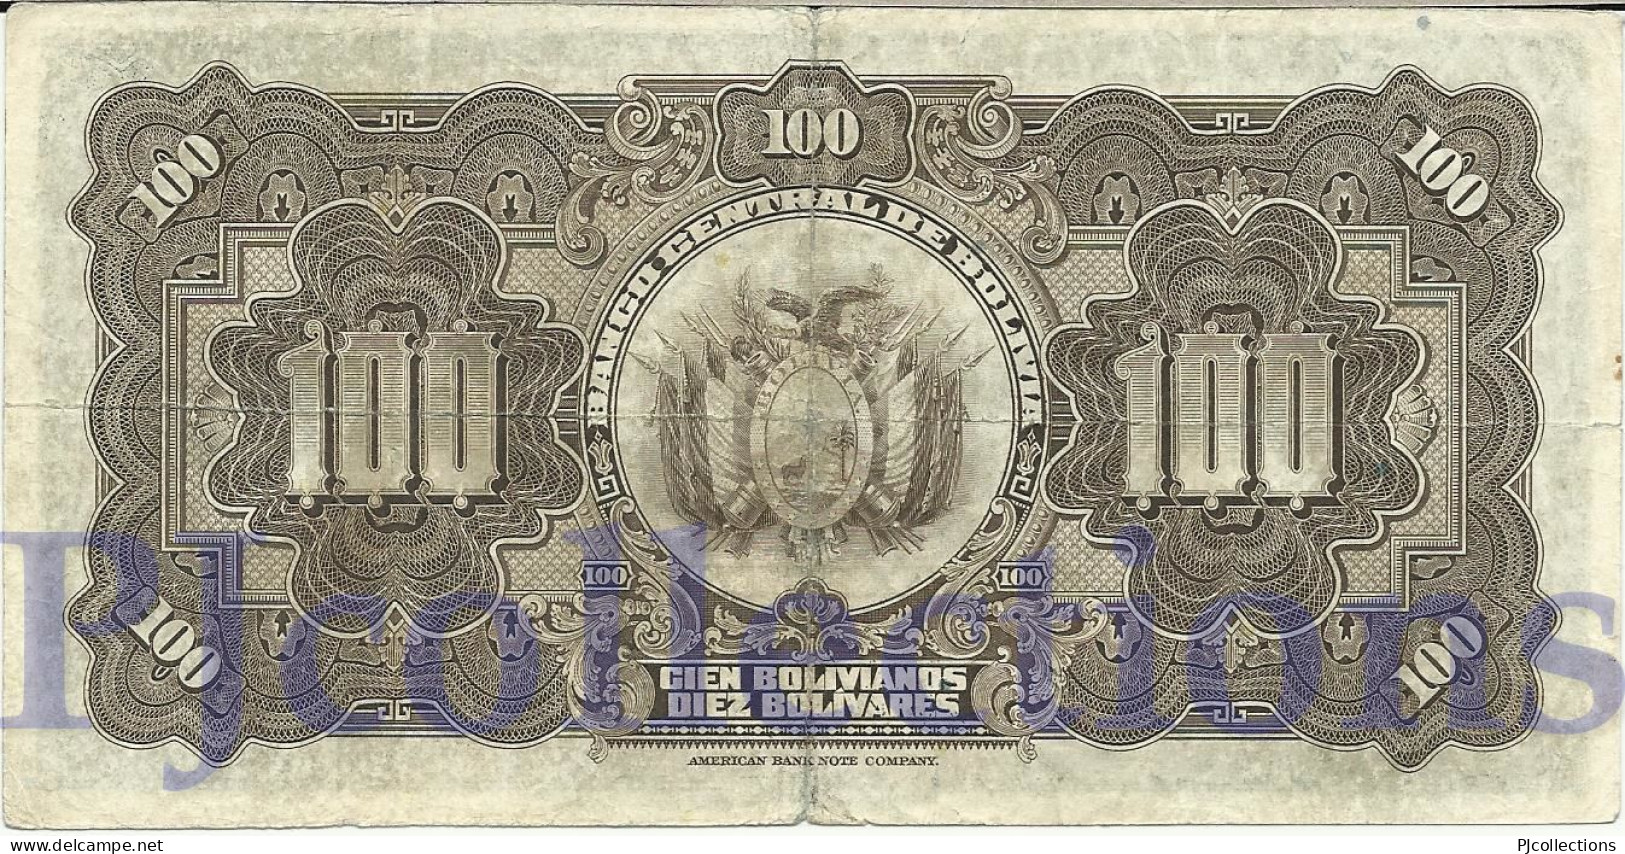 BOLIVIA 100 BOLIVANOS 1928 PICK 125a FINE - Bolivien